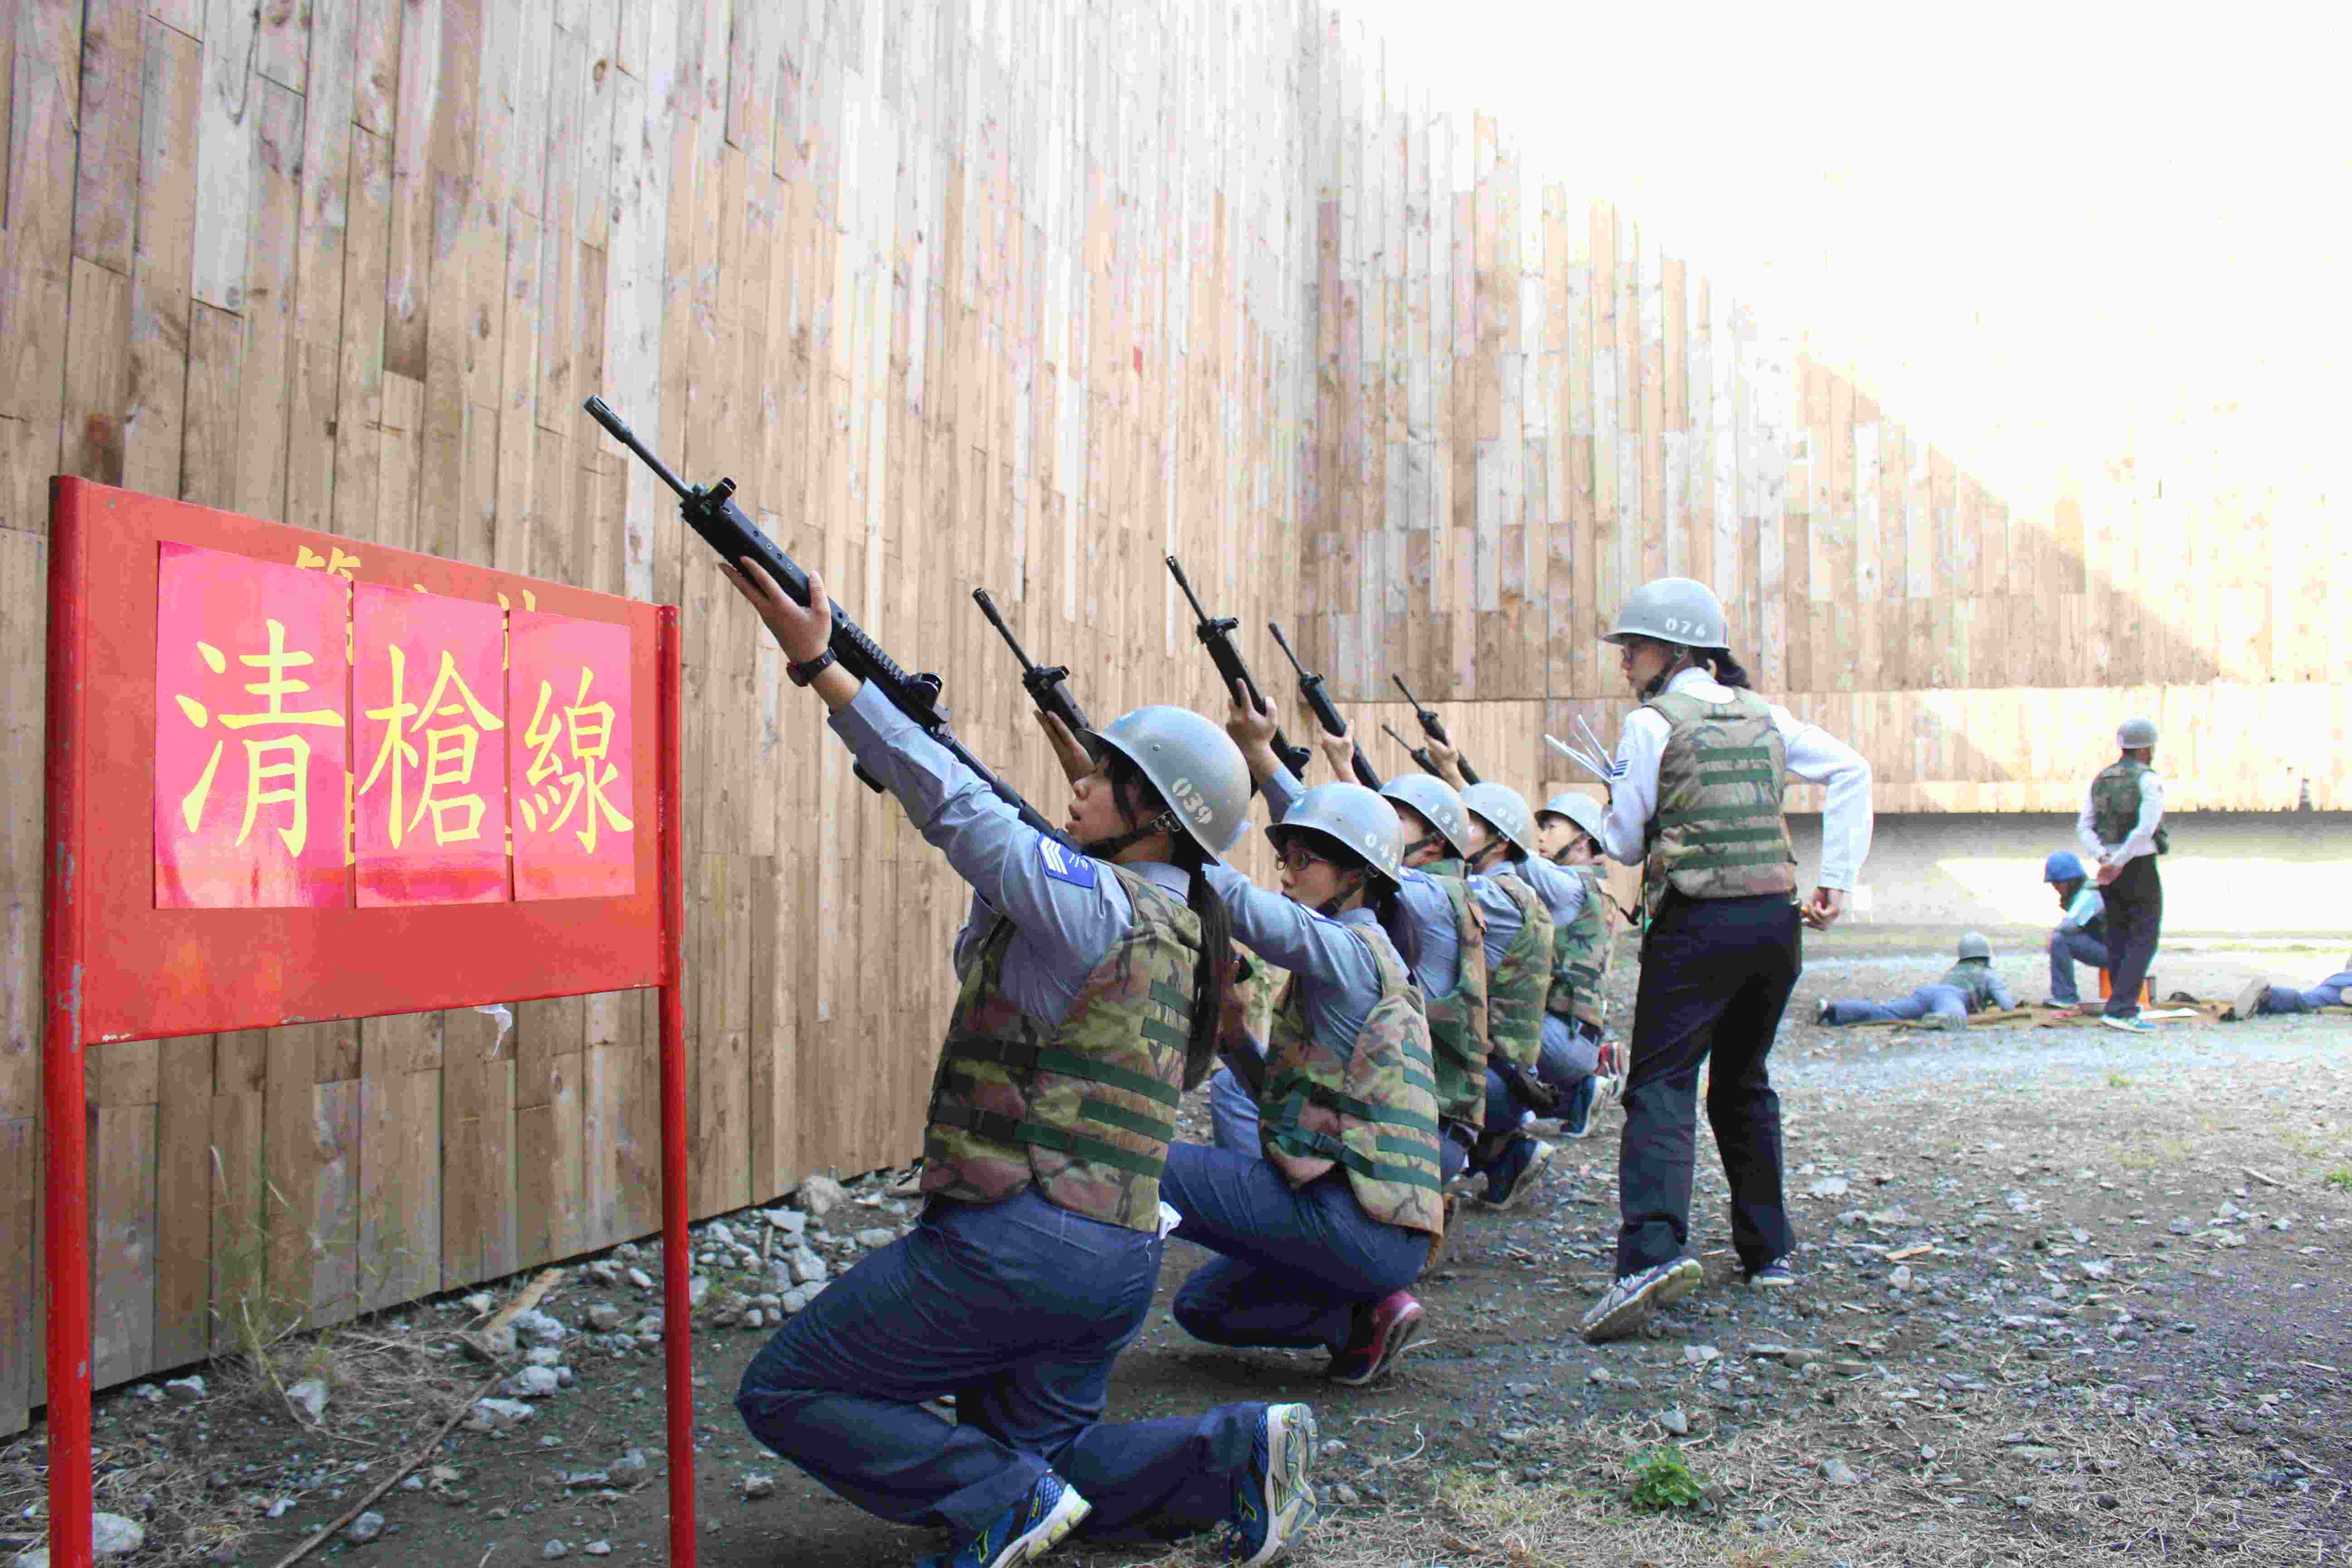 左營通信隊射擊訓練射擊人員於清槍線前採高跪姿檢查步槍。